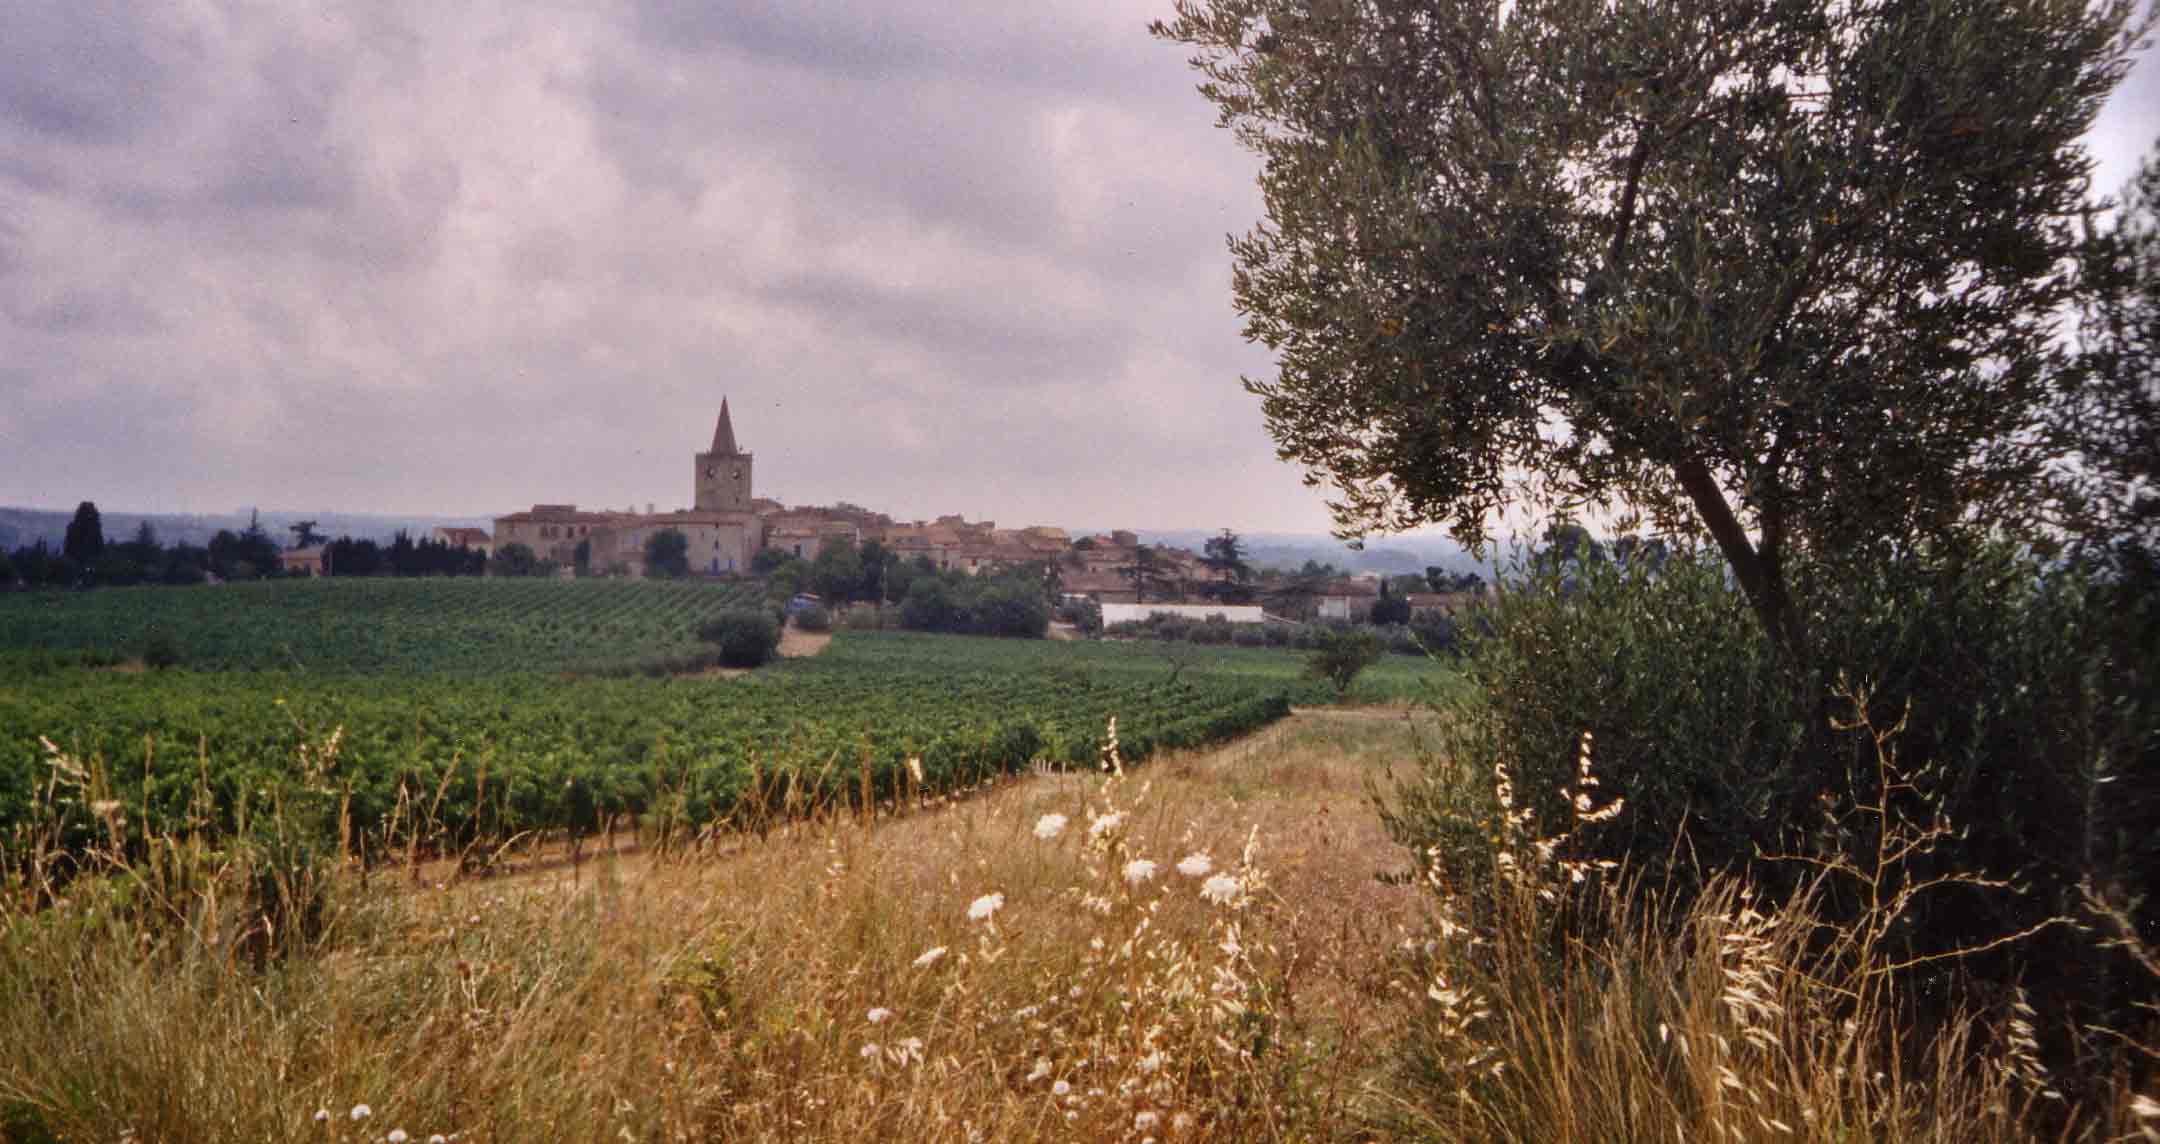 Wijngaard in idyllisch landschap juli 2003